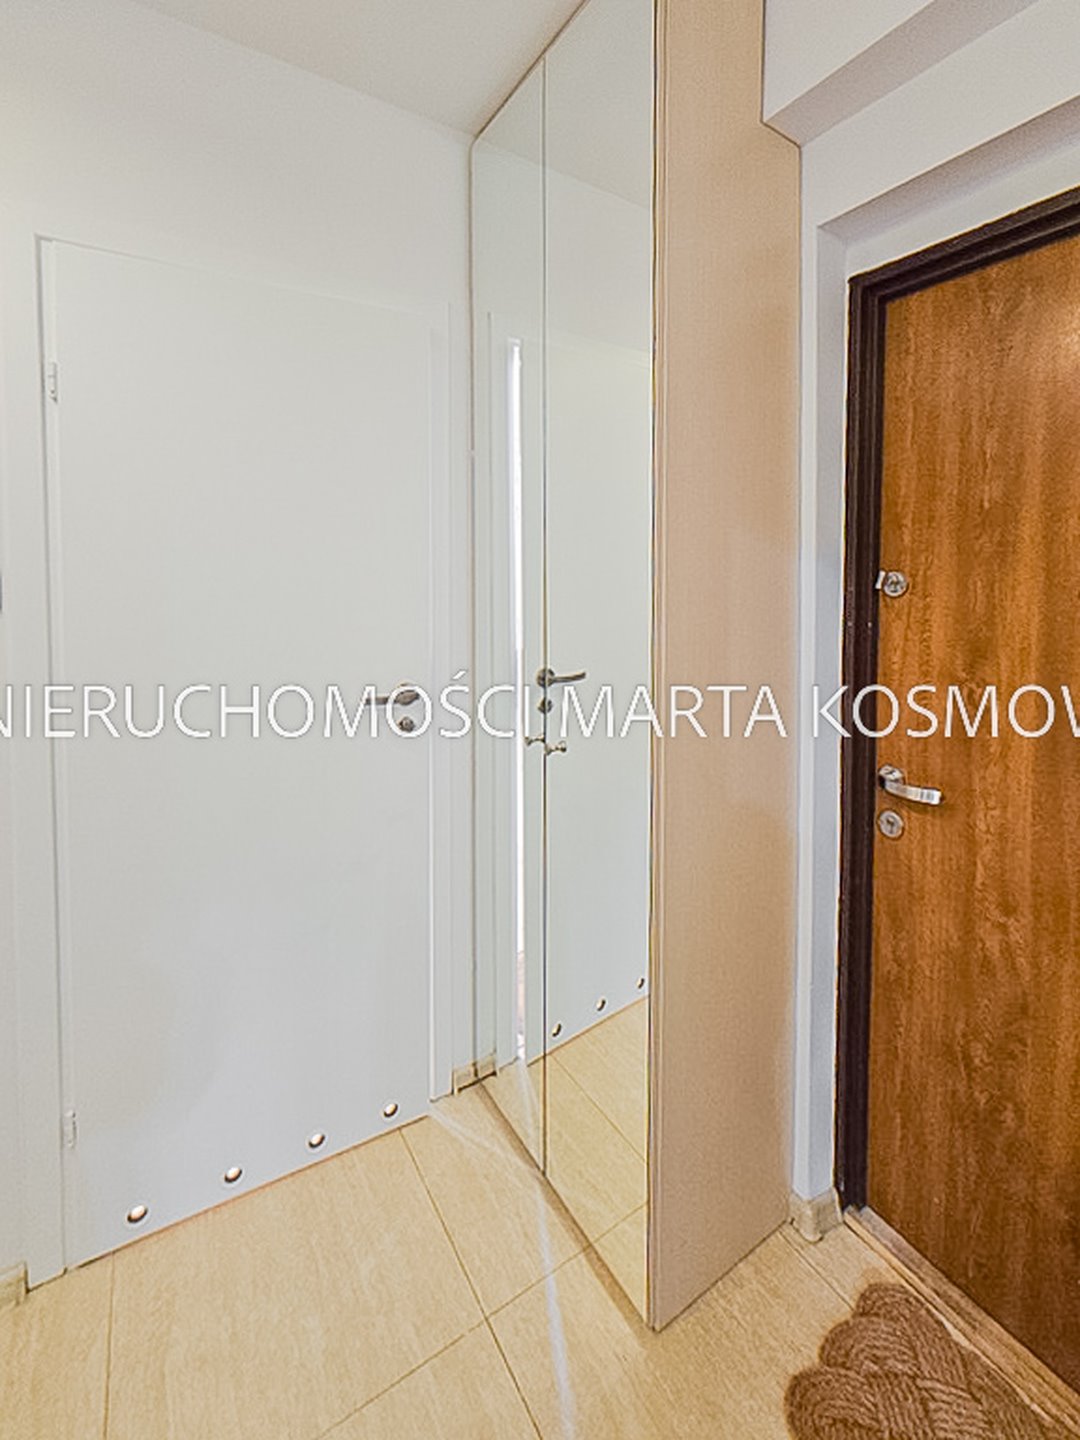 Mieszkanie dwupokojowe na wynajem Warszawa, Śródmieście, ul. Miedziana  45m2 Foto 12